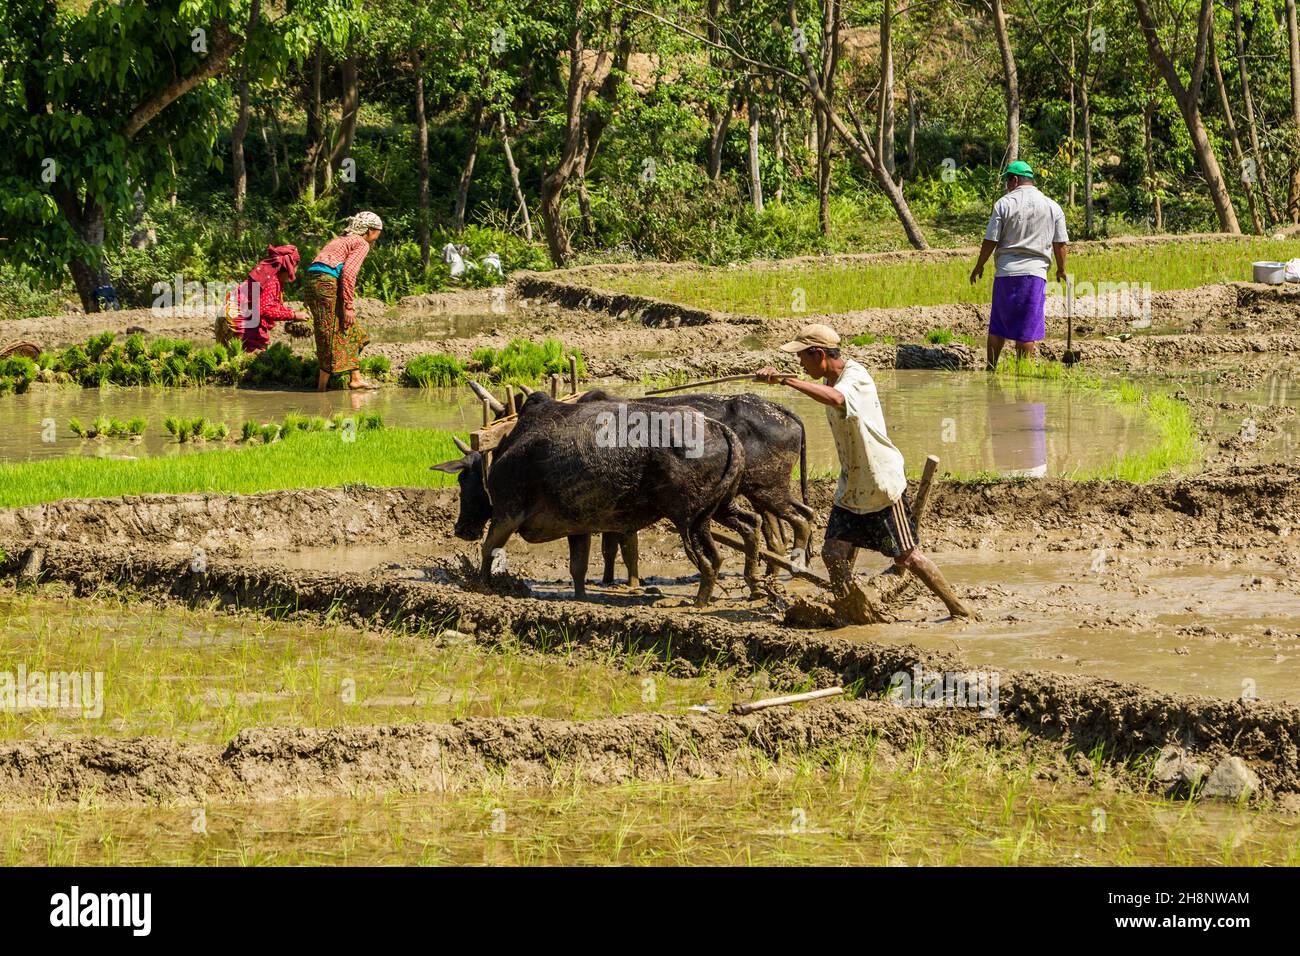 Ein nepalesischer Bauer pflügt in Zentral-Nepal ein matschiges Reisfeld mit einem Team von Ochsen und einem Holzpflug. Stockfoto